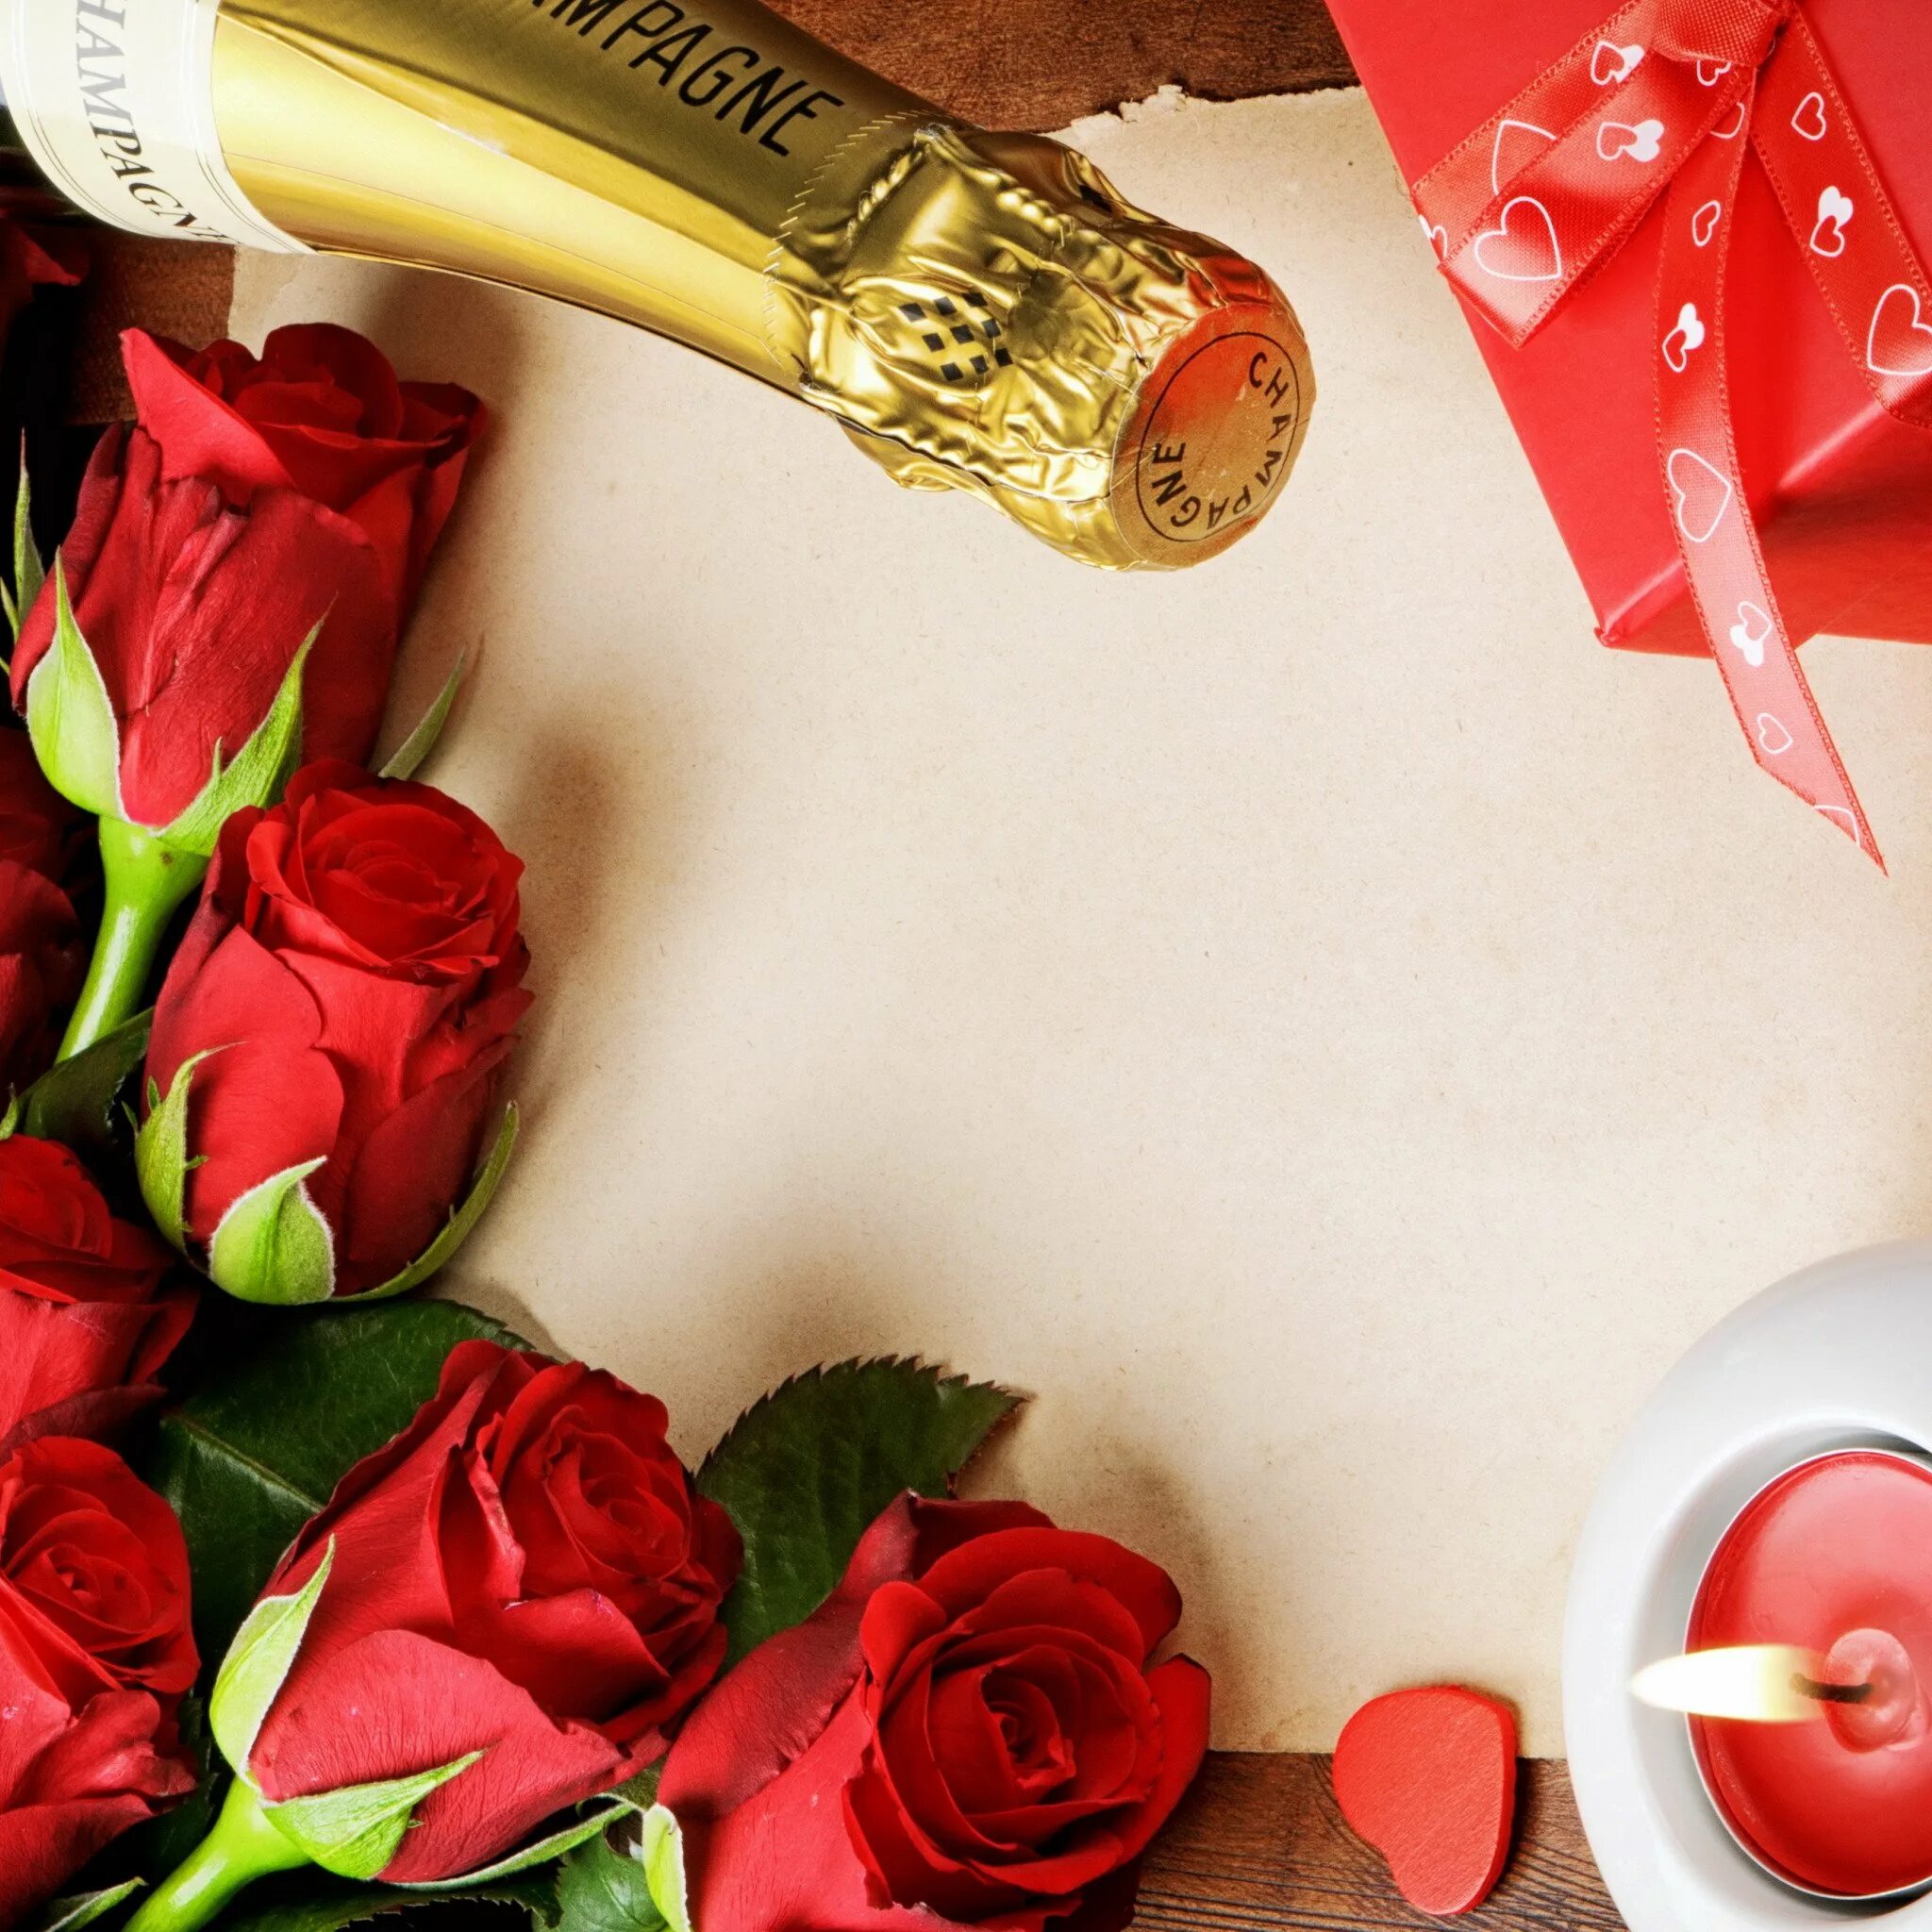 Шампанское и розы читать на русском полностью. Цветы и шампанское. Шампанское и розы. Цветы шампанское конфеты. Букет роз и шампанское.